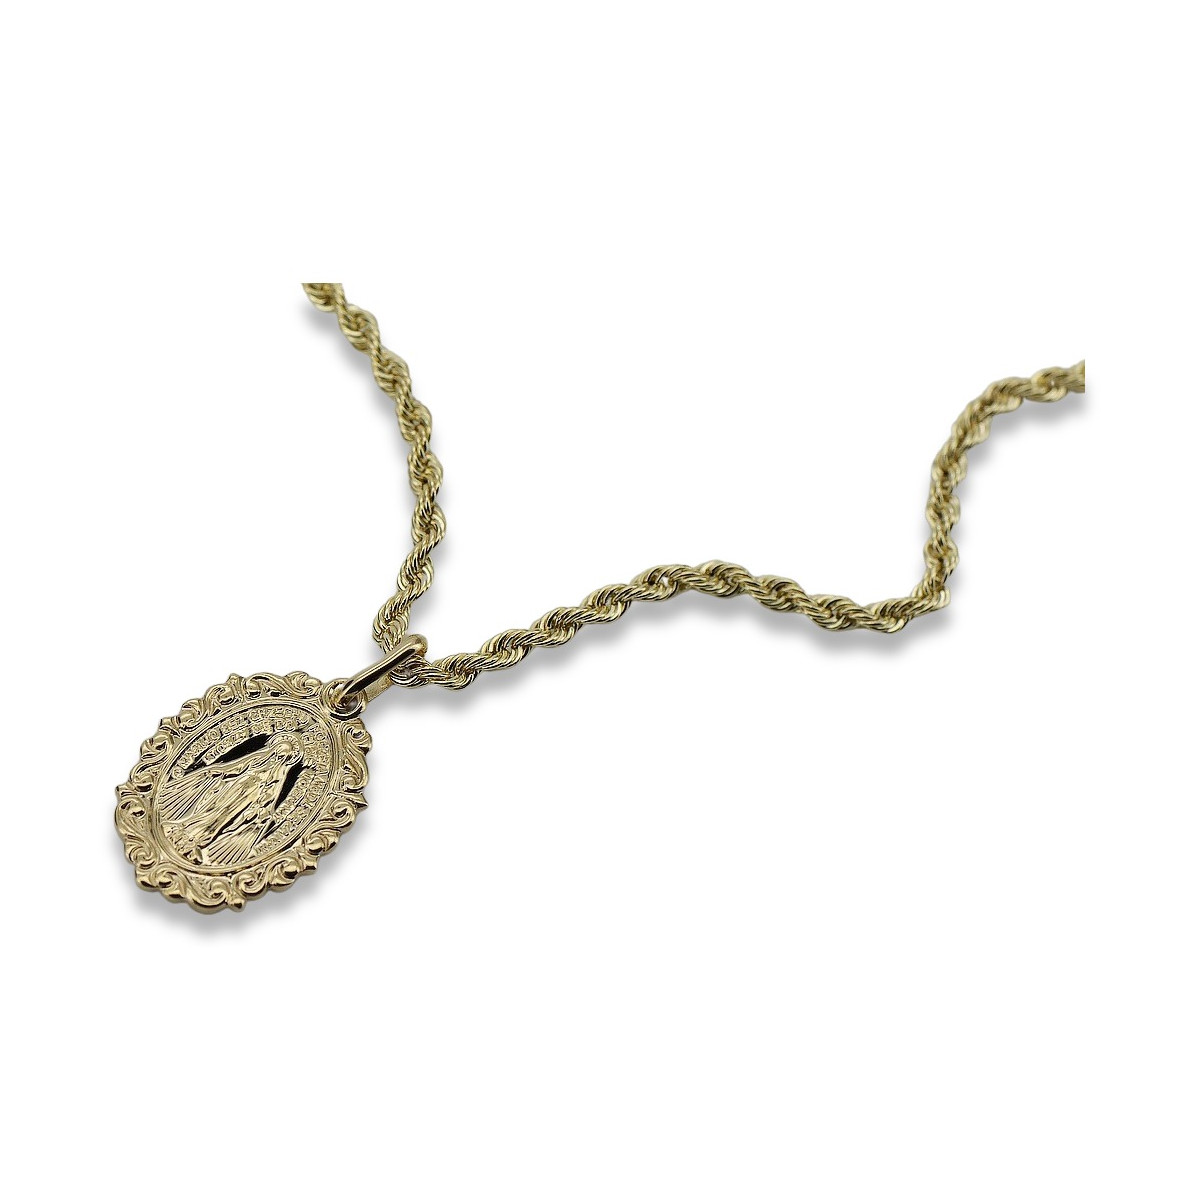 Złoty medalik Bozia z łańcuszkiem Corda 14k 585 pm005y&cc019y2mm